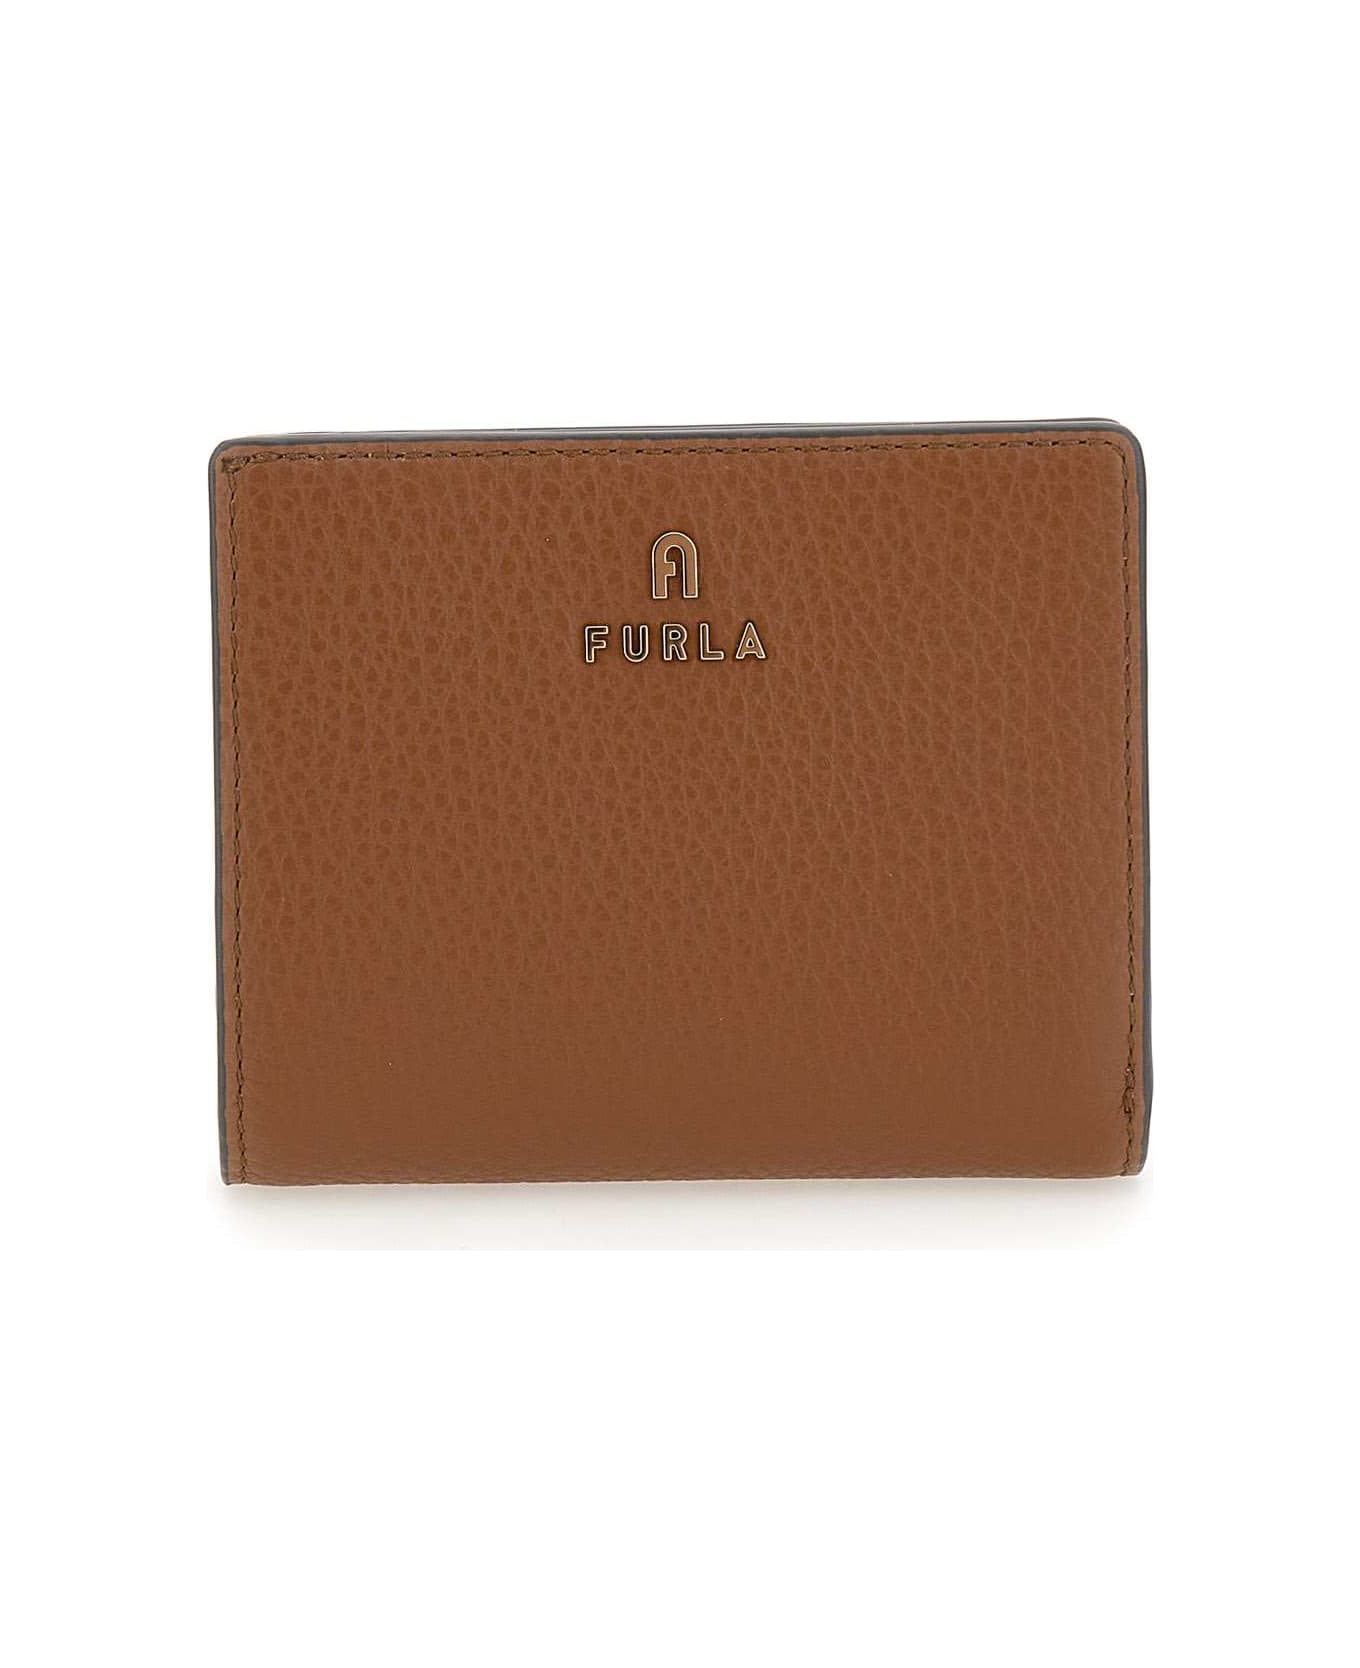 Furla 'camelia' Leather Wallet - Marrone 財布